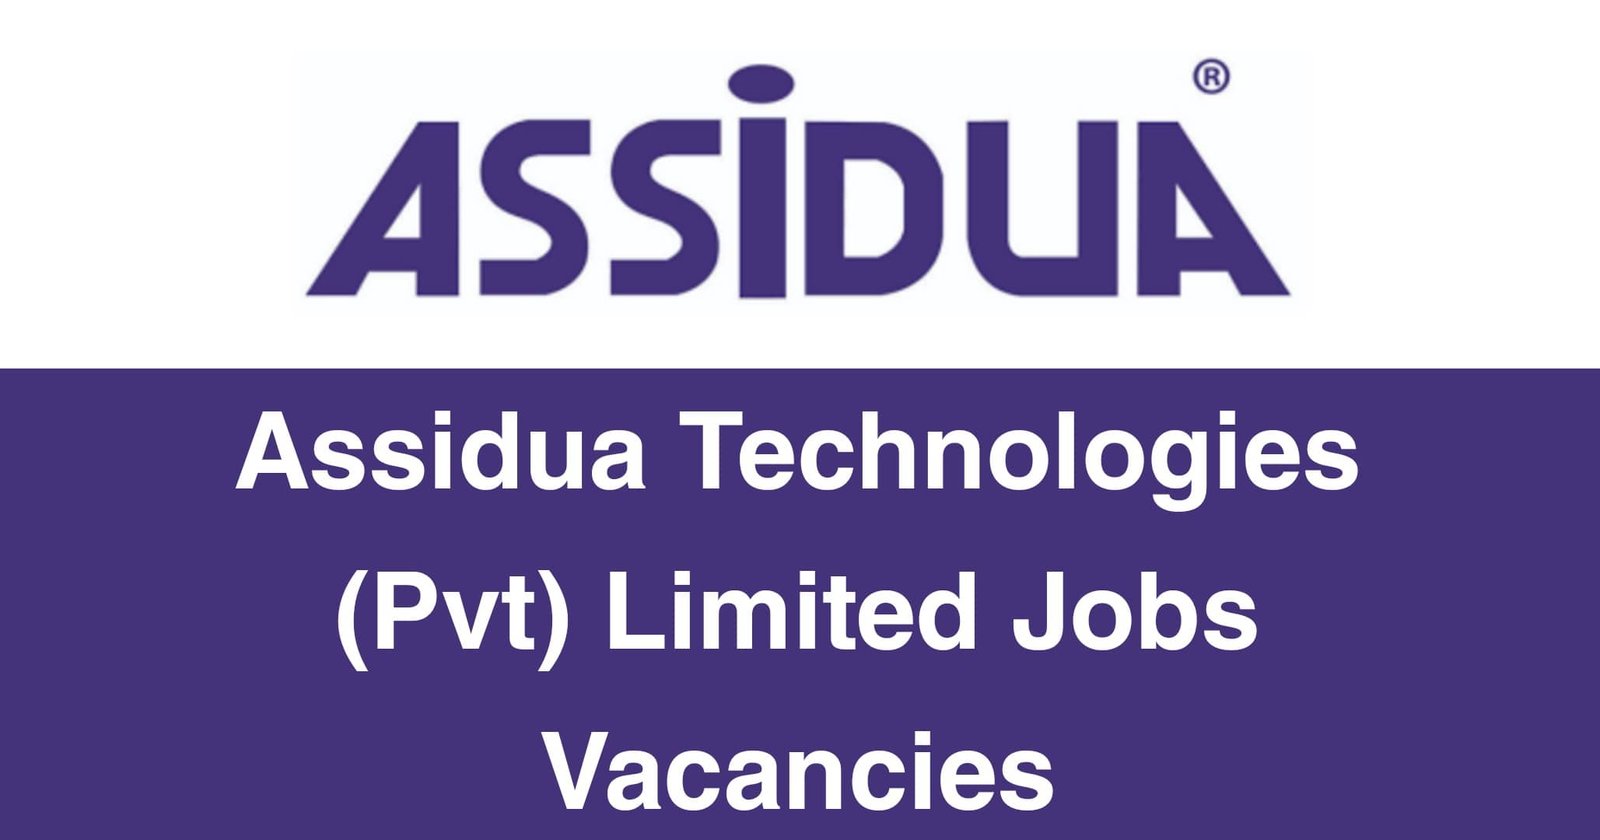 Assidua Technologies (Pvt) Limited Jobs Vacancies